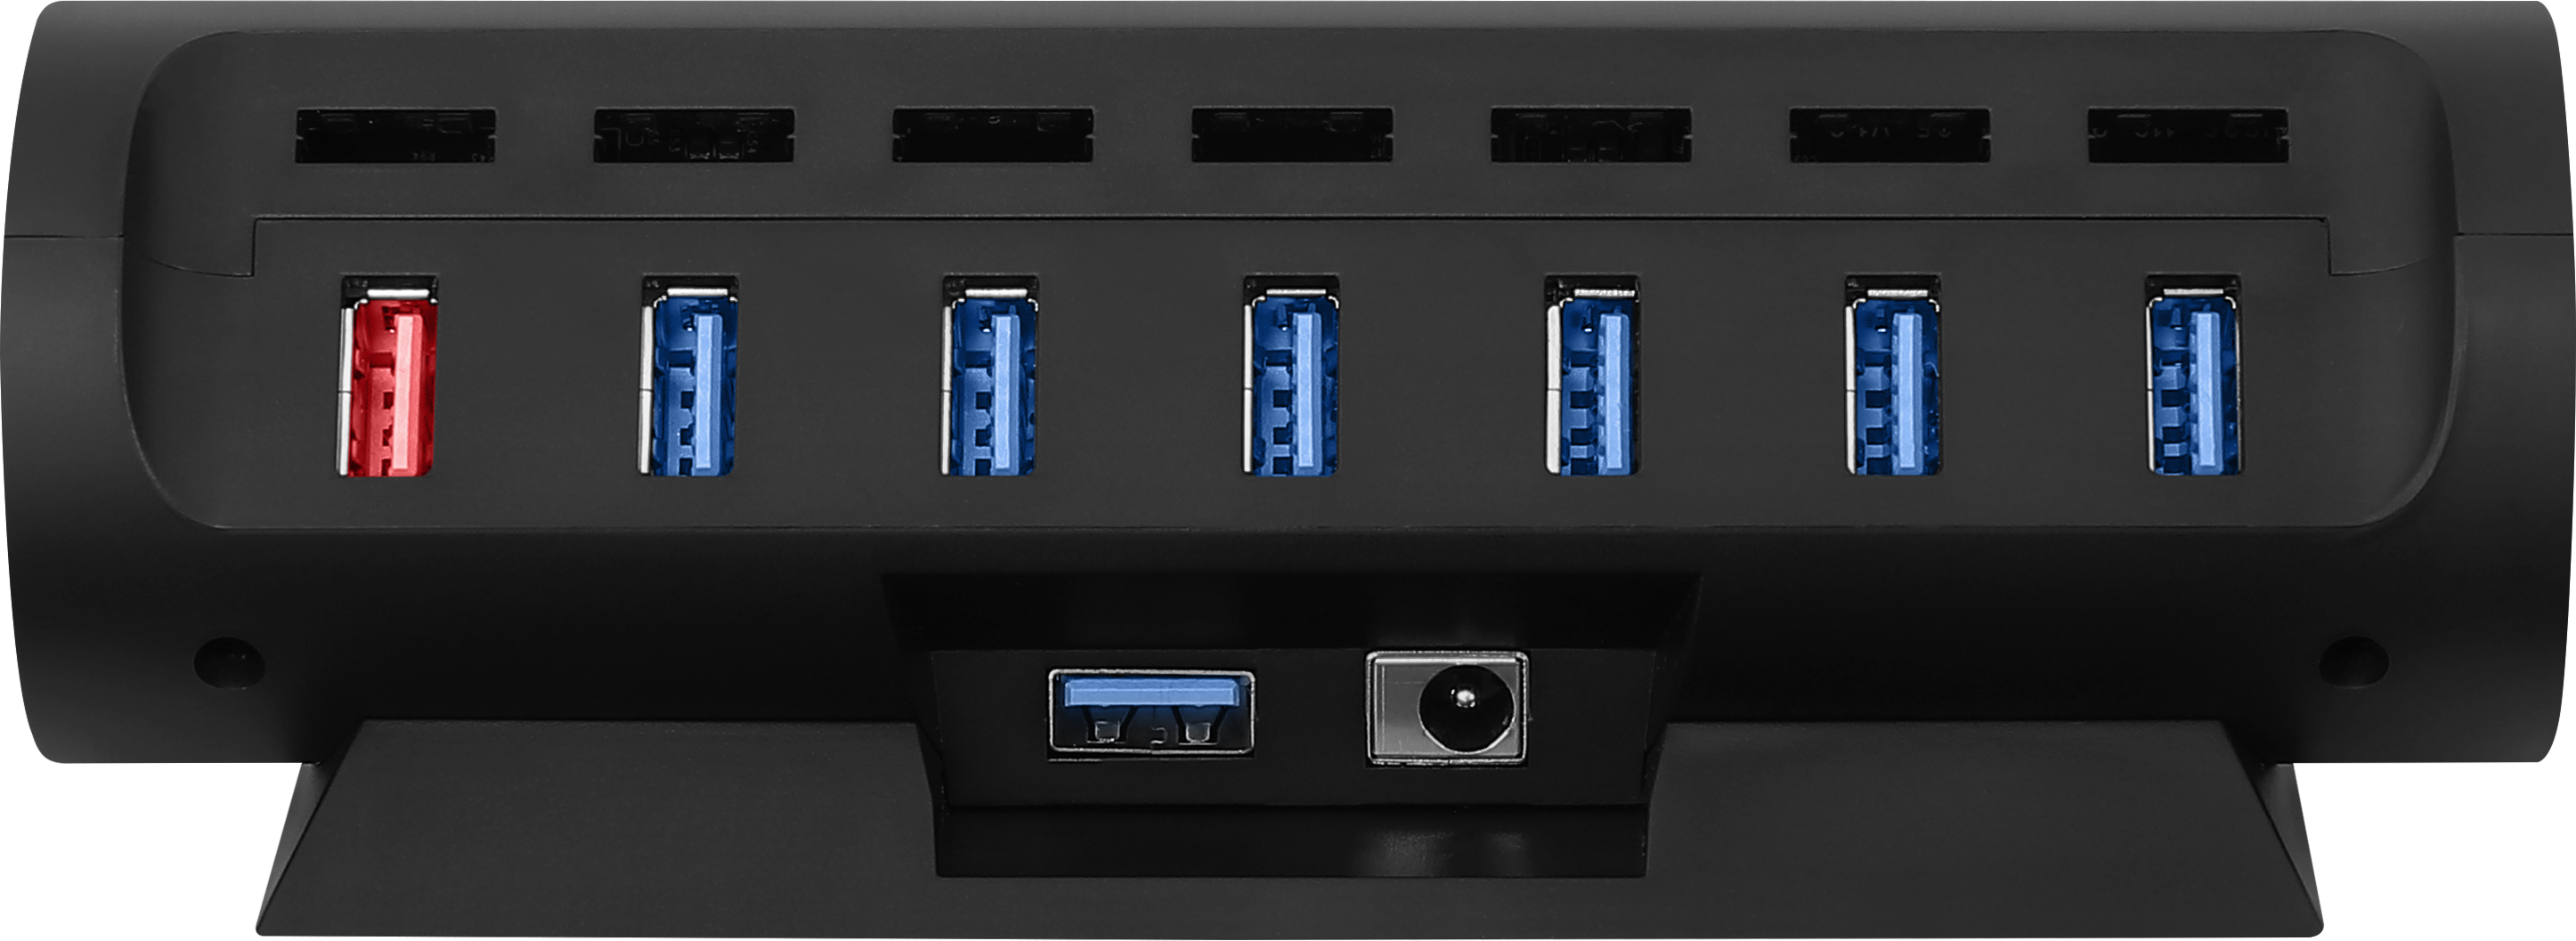 Streamplify HUB CTRL 7 slot, RGB, 12V, EU power cord - black